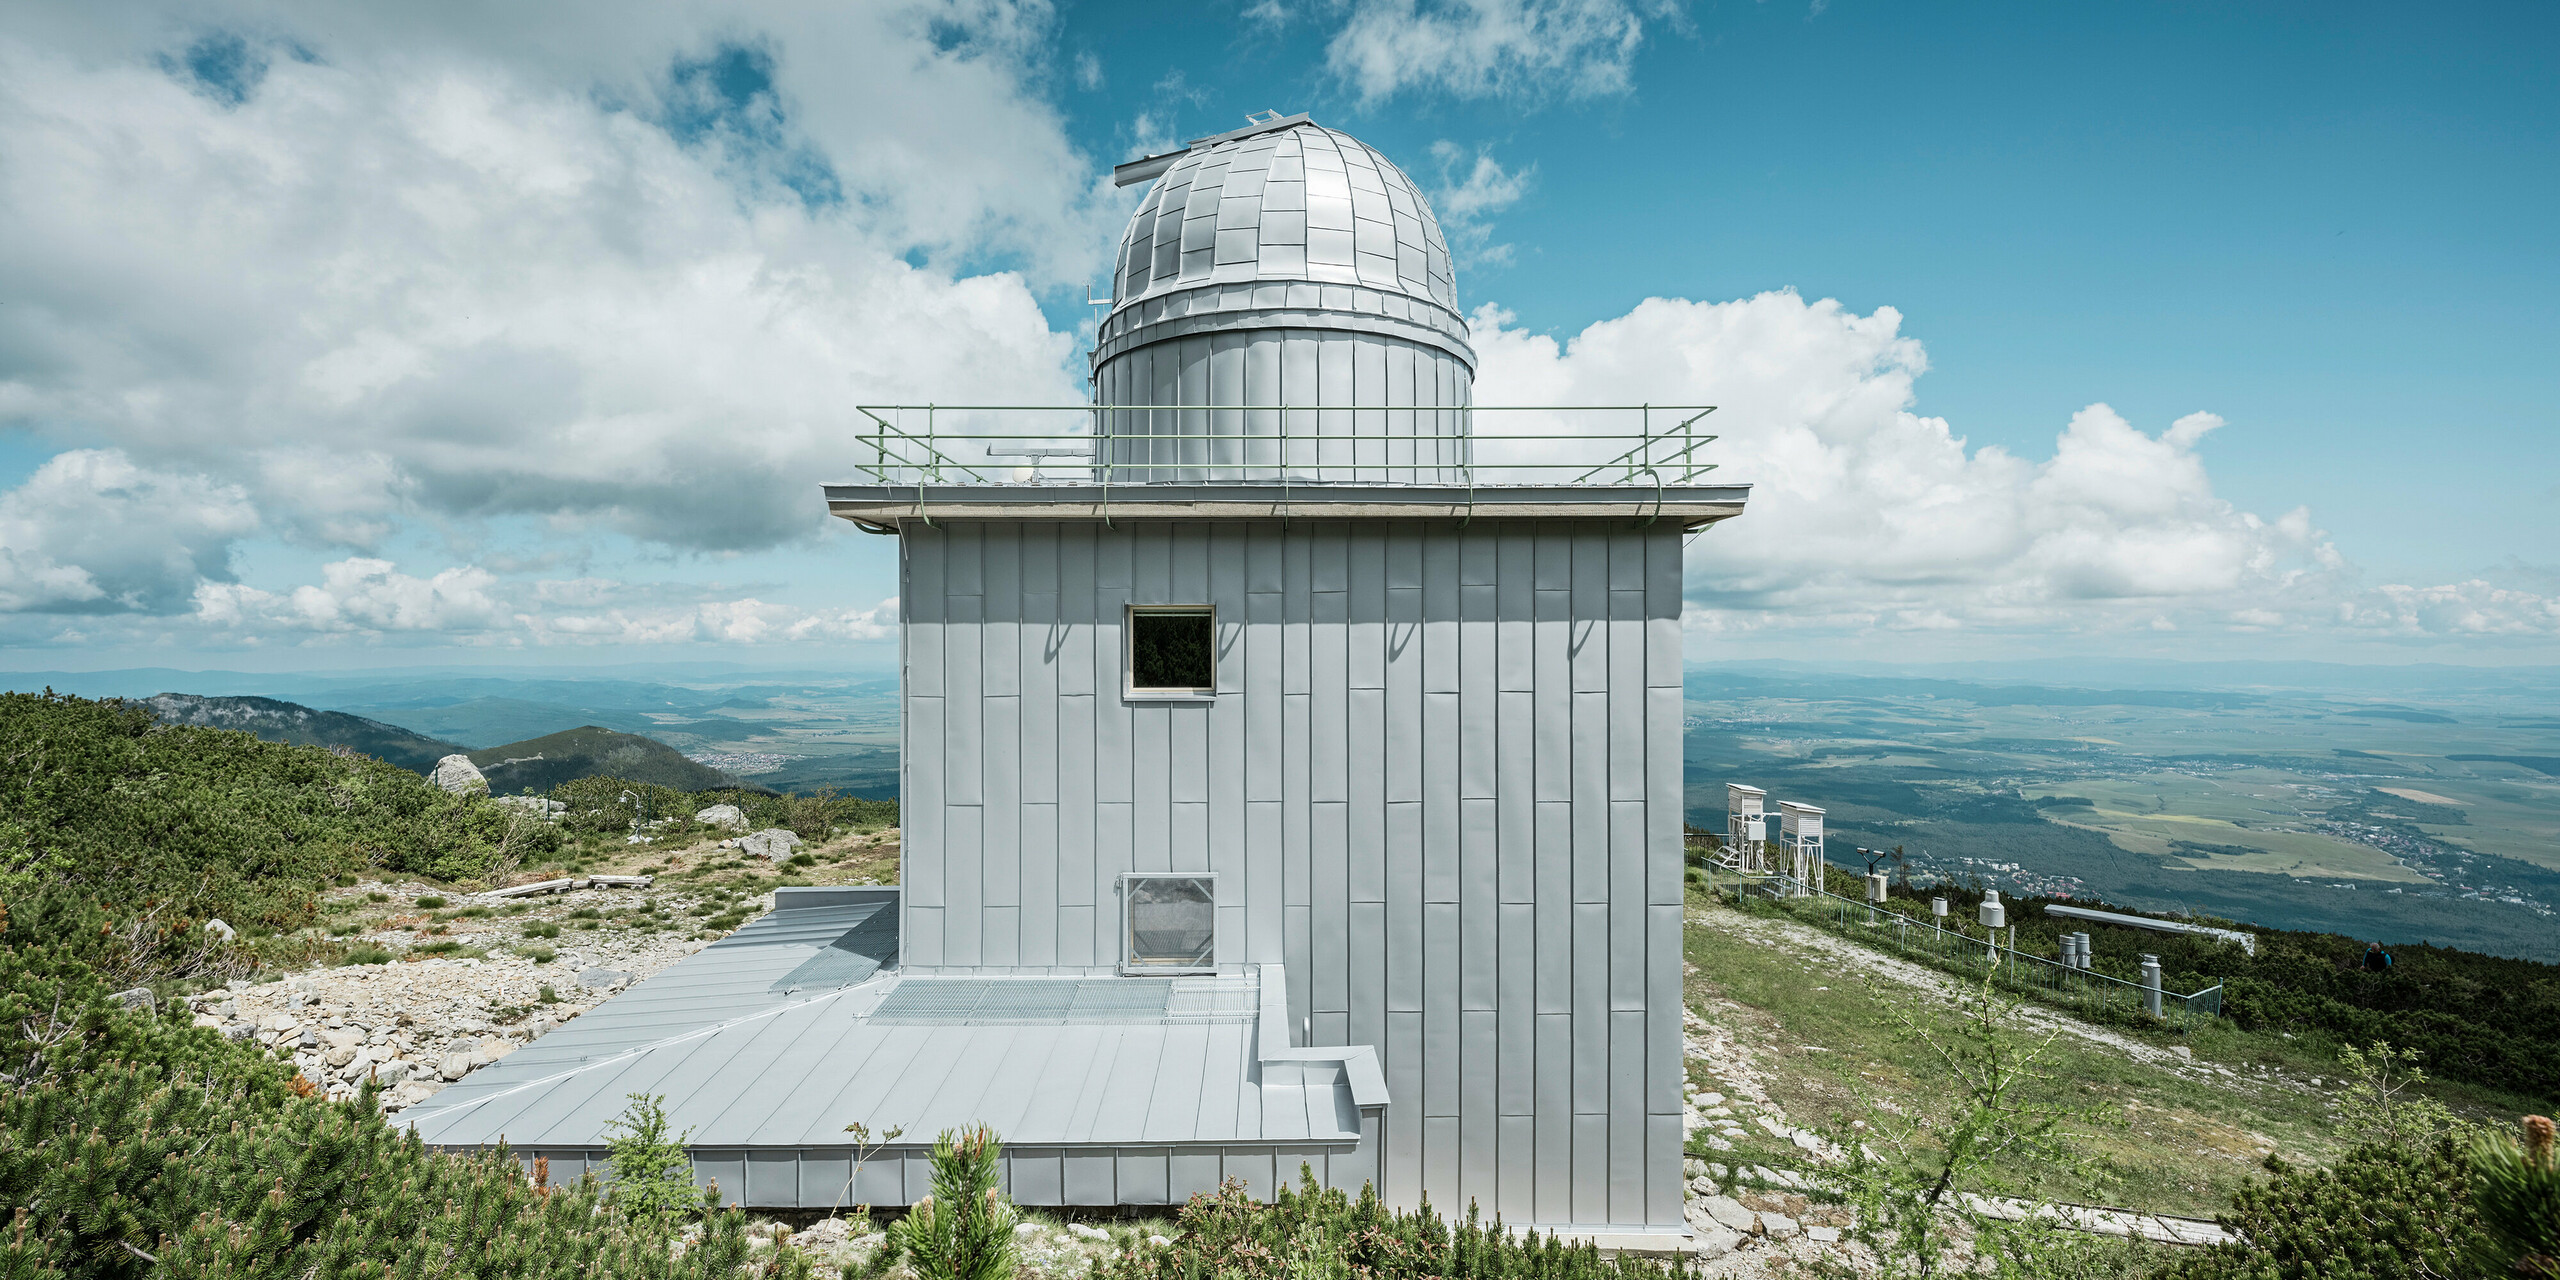 Modernisierter hinterer Teil des Observatoriums Skalnaté Pleso in der Natur der Hohen Tatra, mit einer Dach- und Fassadenverkleidung aus PREFALZ in Silbermetallic. Die klaren Linien und die metallische Eleganz des Materials ergänzen die raue Schönheit der slowakischen Berglandschaft, während die Konstruktion selbst den extremen Witterungsbedingungen der exponierten Lage in den Bergen standhält. Dank des robusten Aluminiums ist die Sternwarte langlebig und fügt sich ästhetisch in die beeindruckende Umgebung ein.